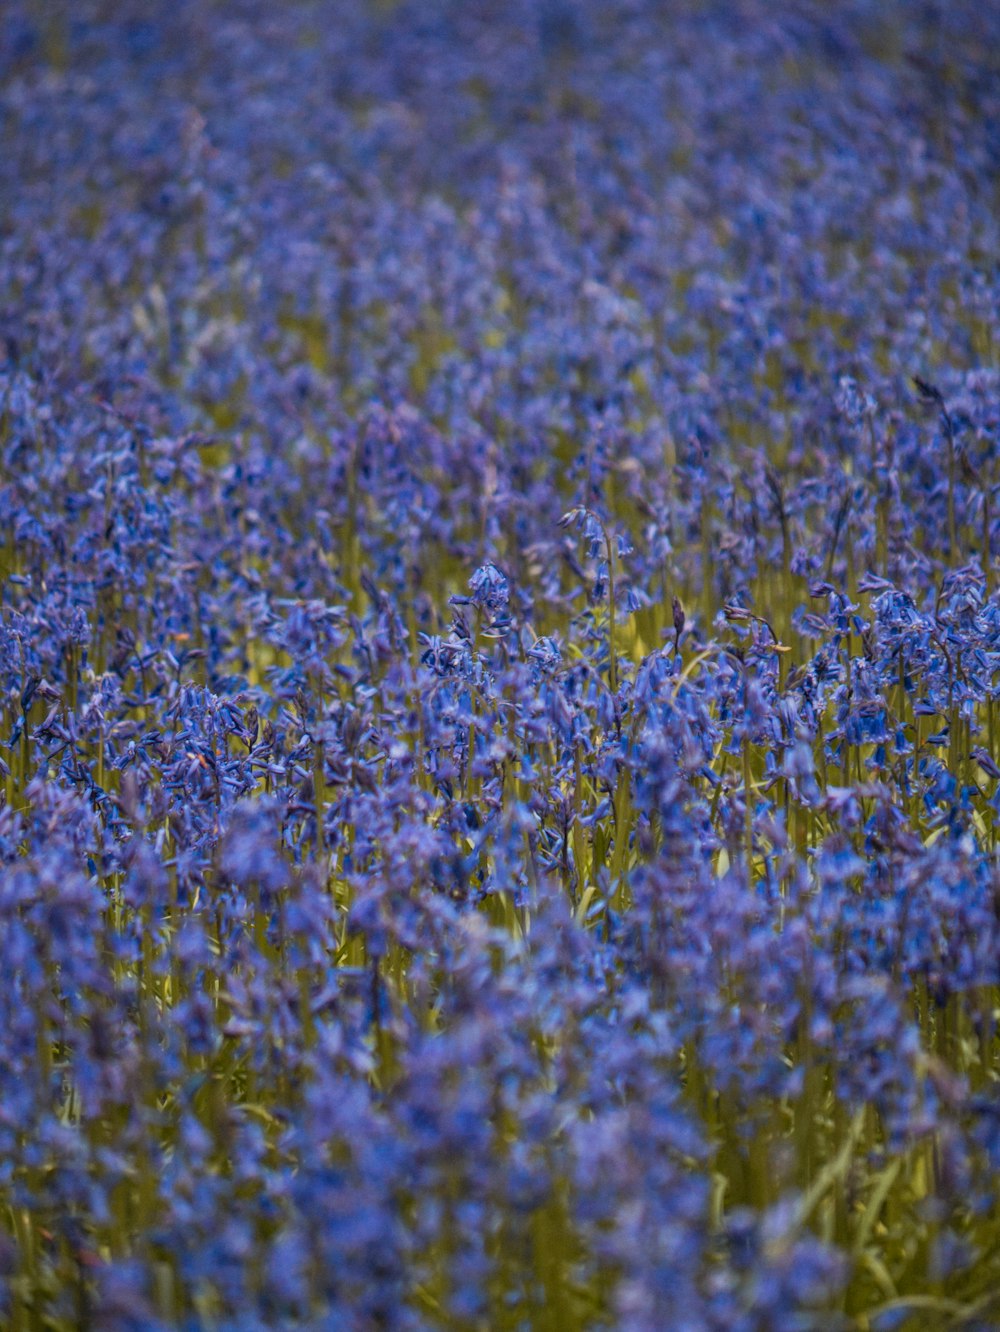 野原の真ん中に鳥がいる青い花でいっぱいの野原